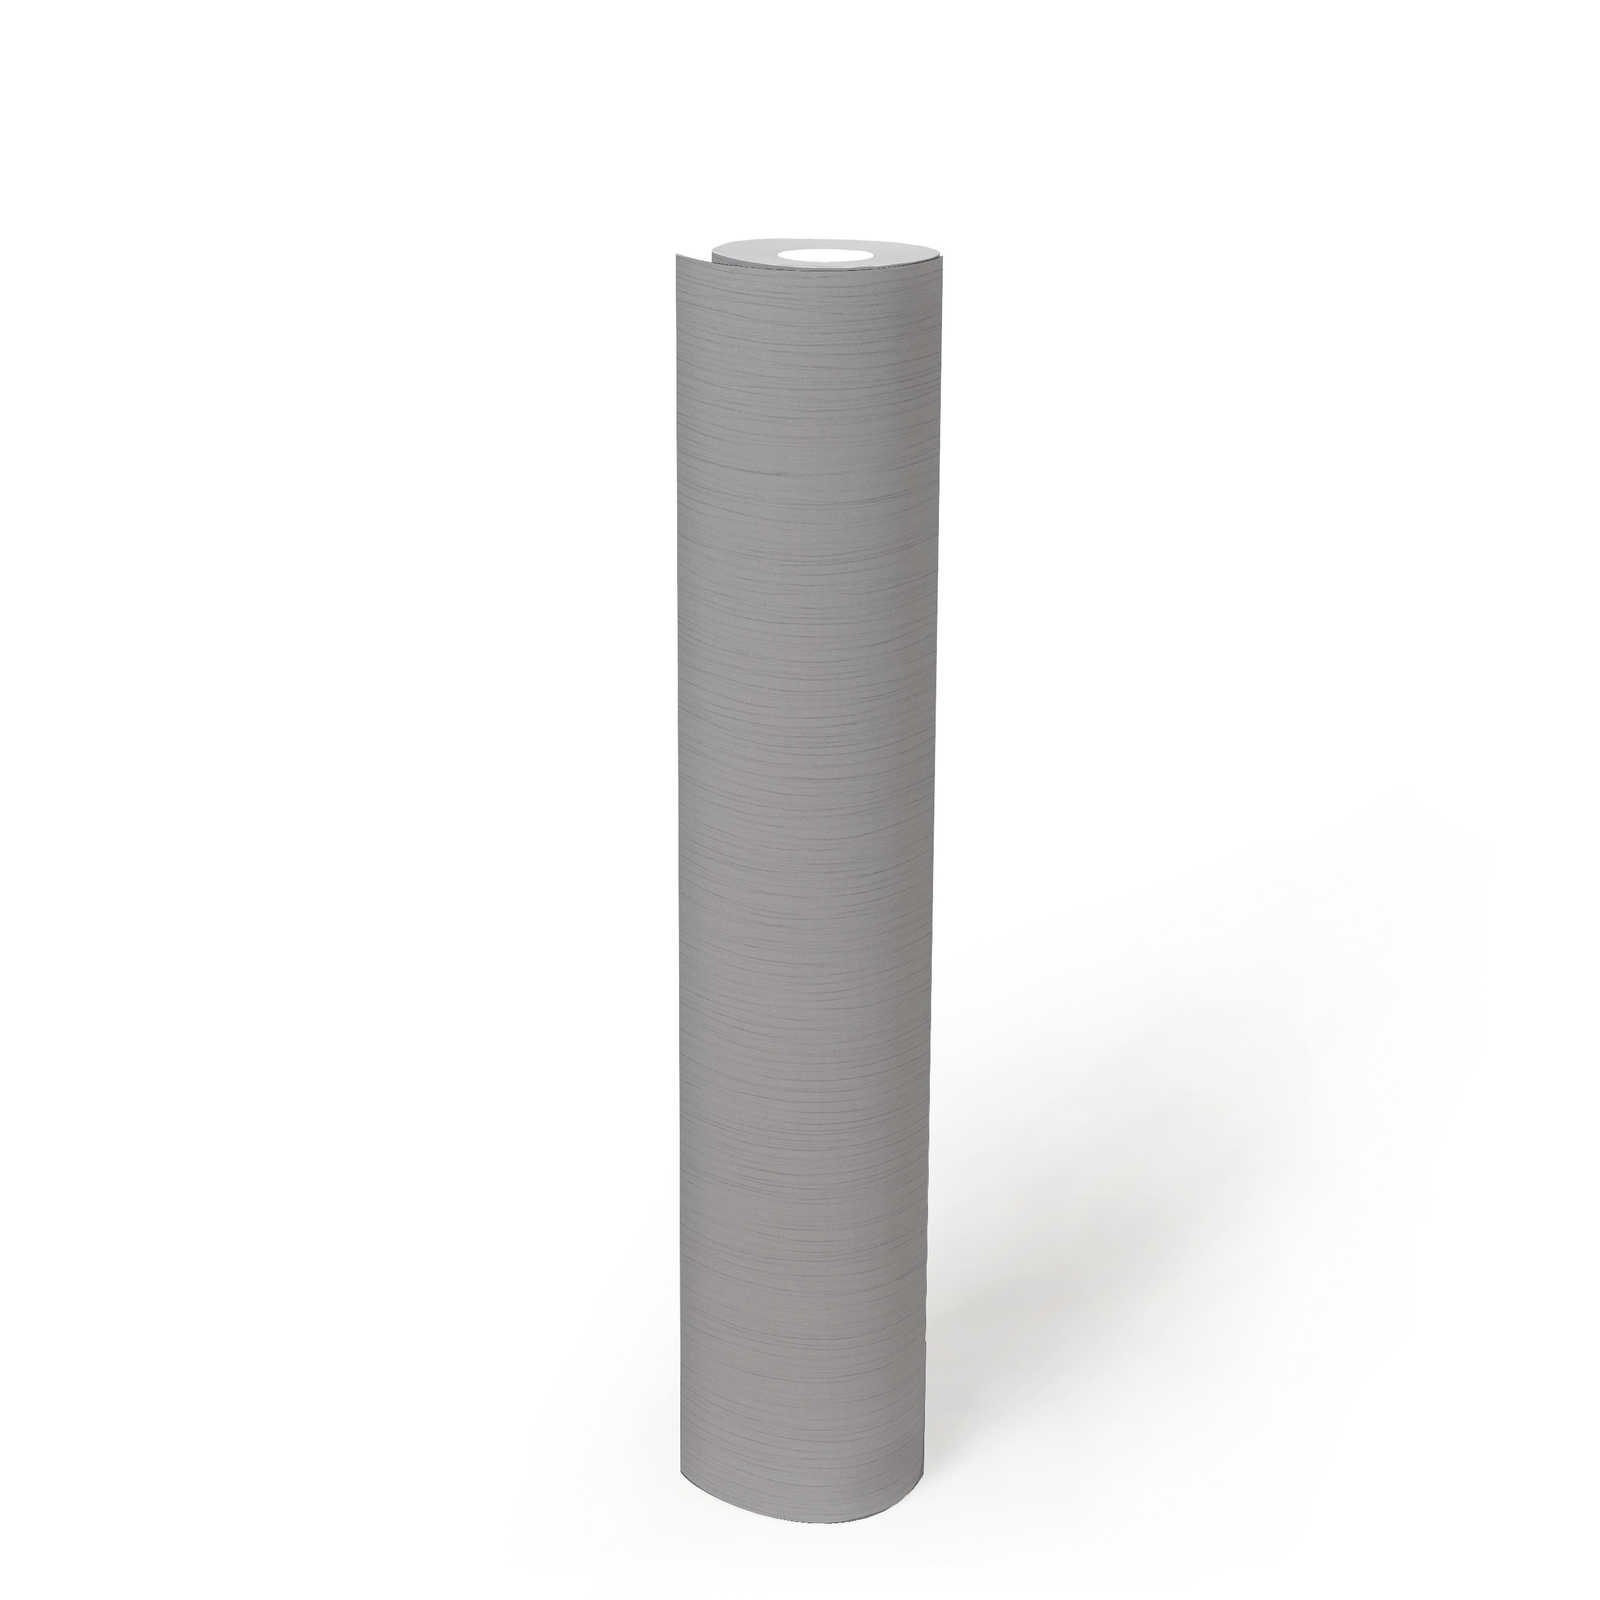             Papier peint gris avec dessin structuré velours, uni, intissé
        